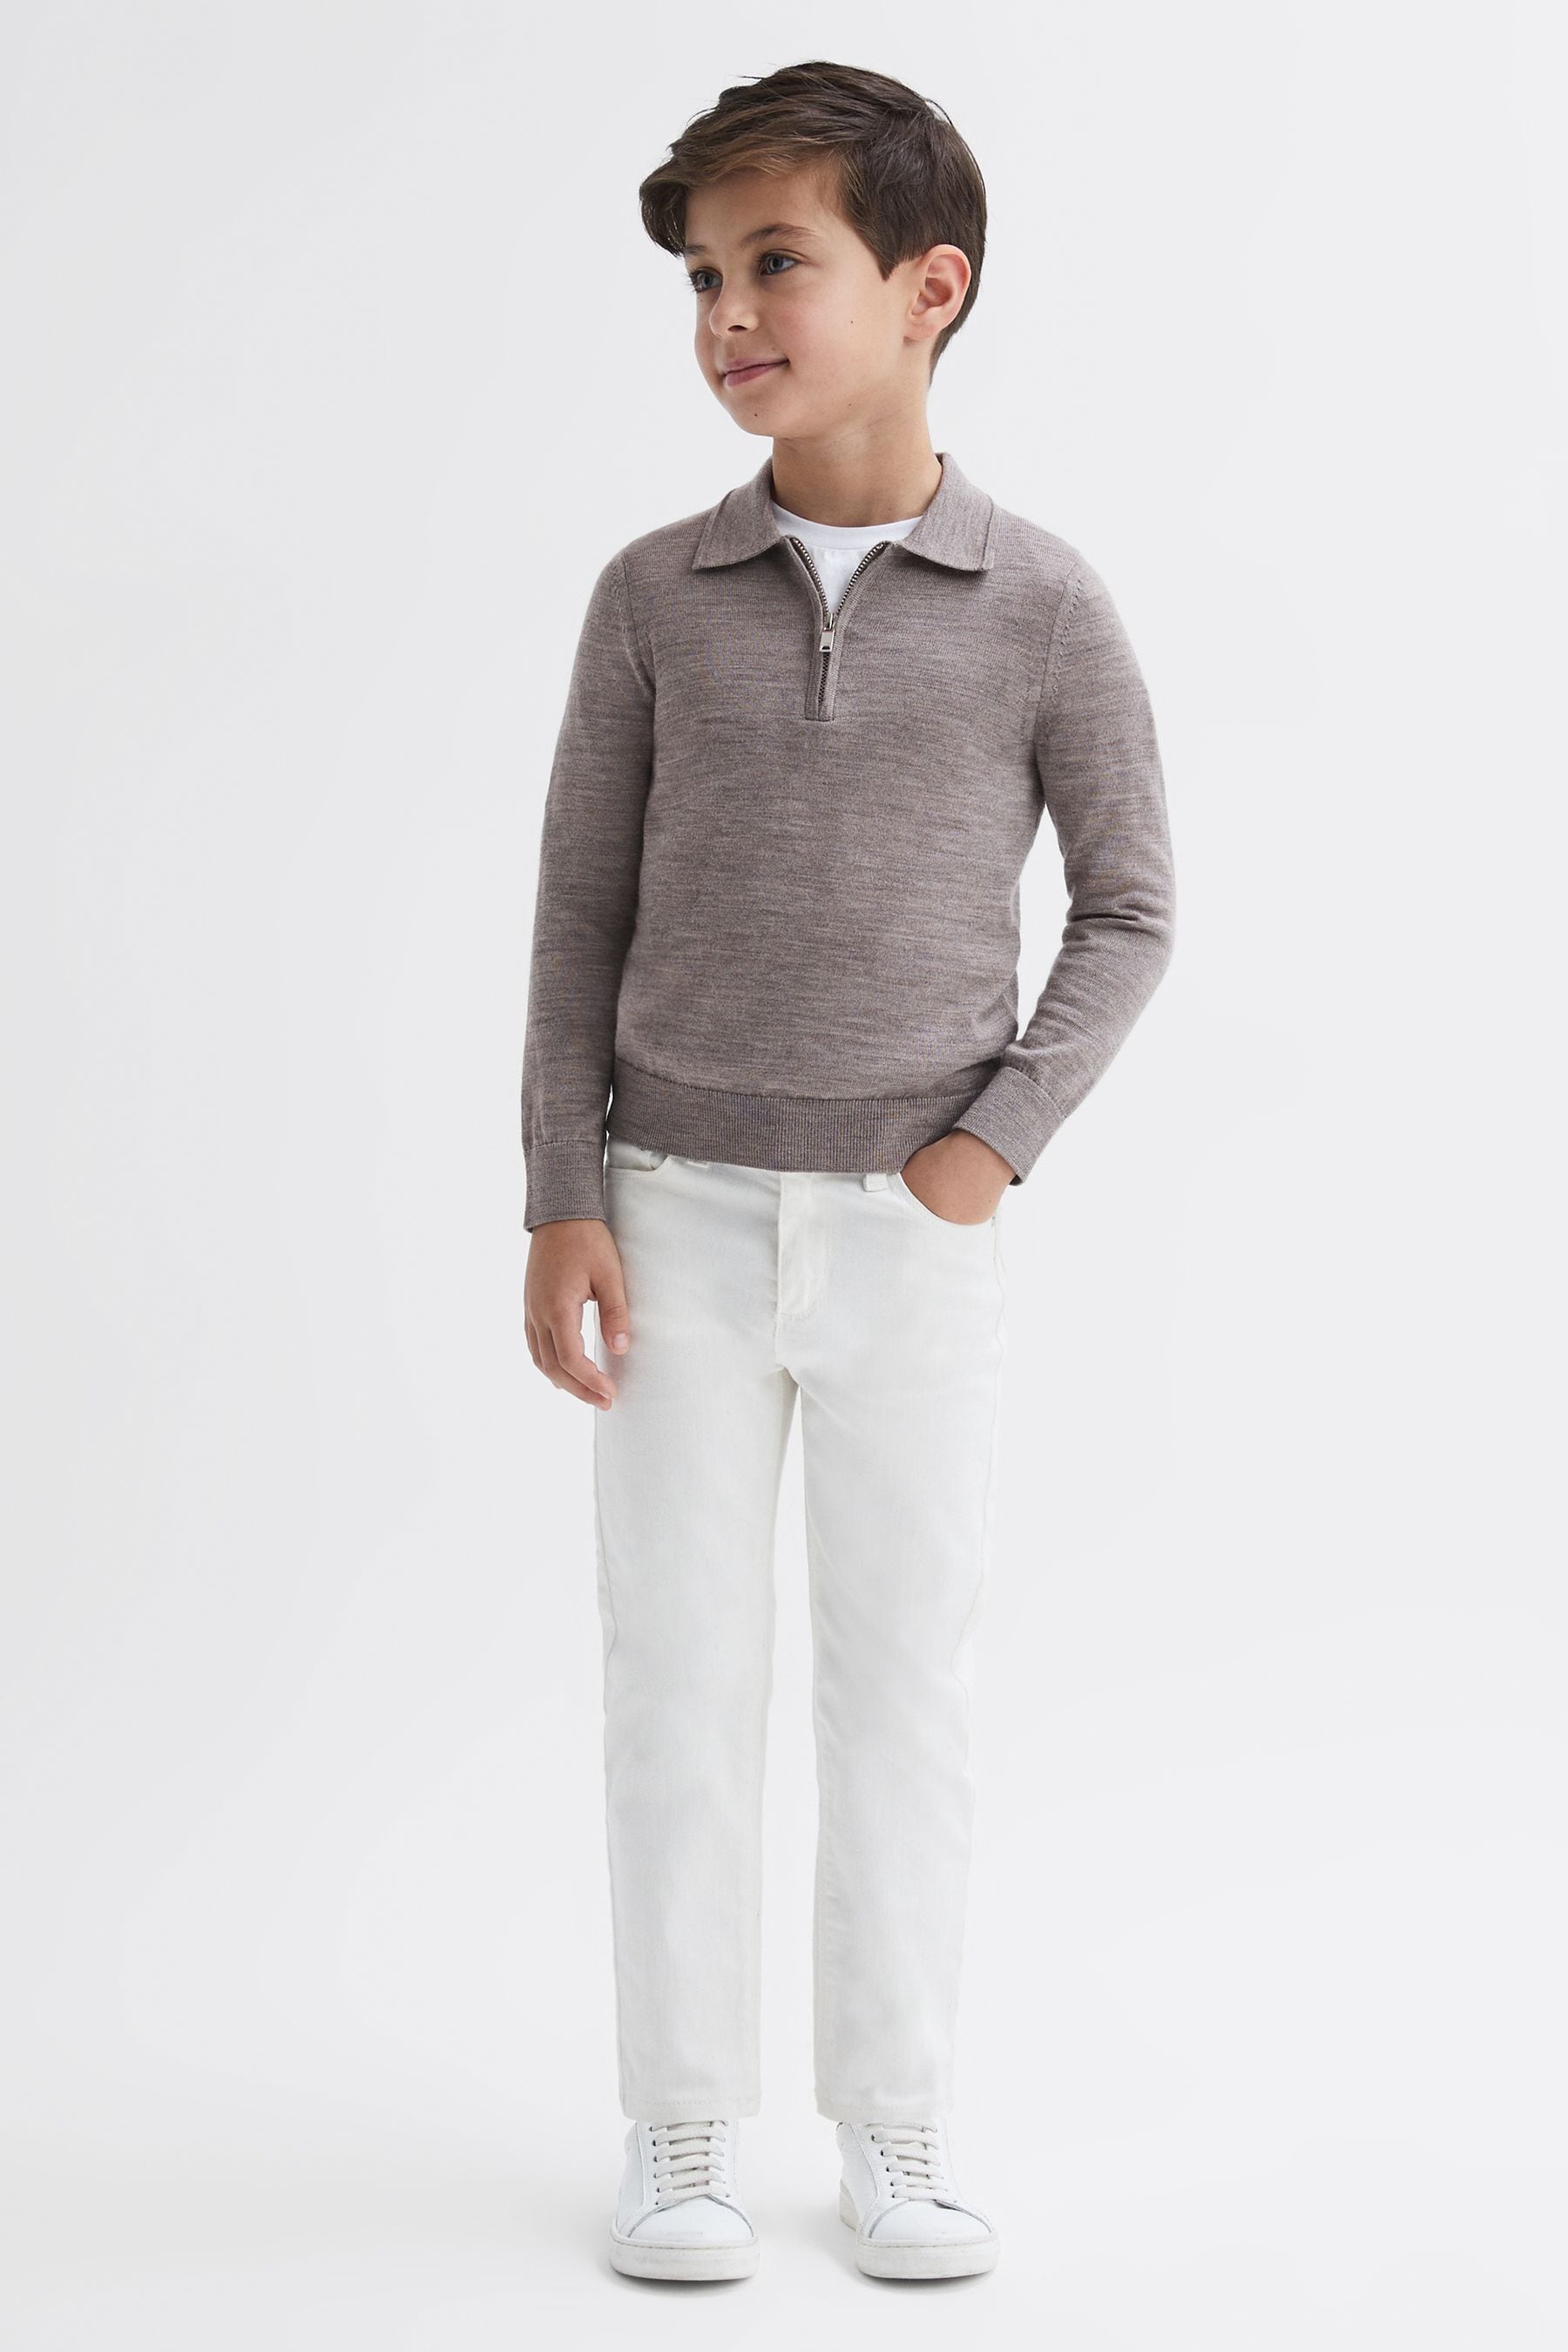 Reiss Kids' Robertson - Woodsmoke Junior Slim Fit Merino Wool Polo Shirt, 4 - 5 Years